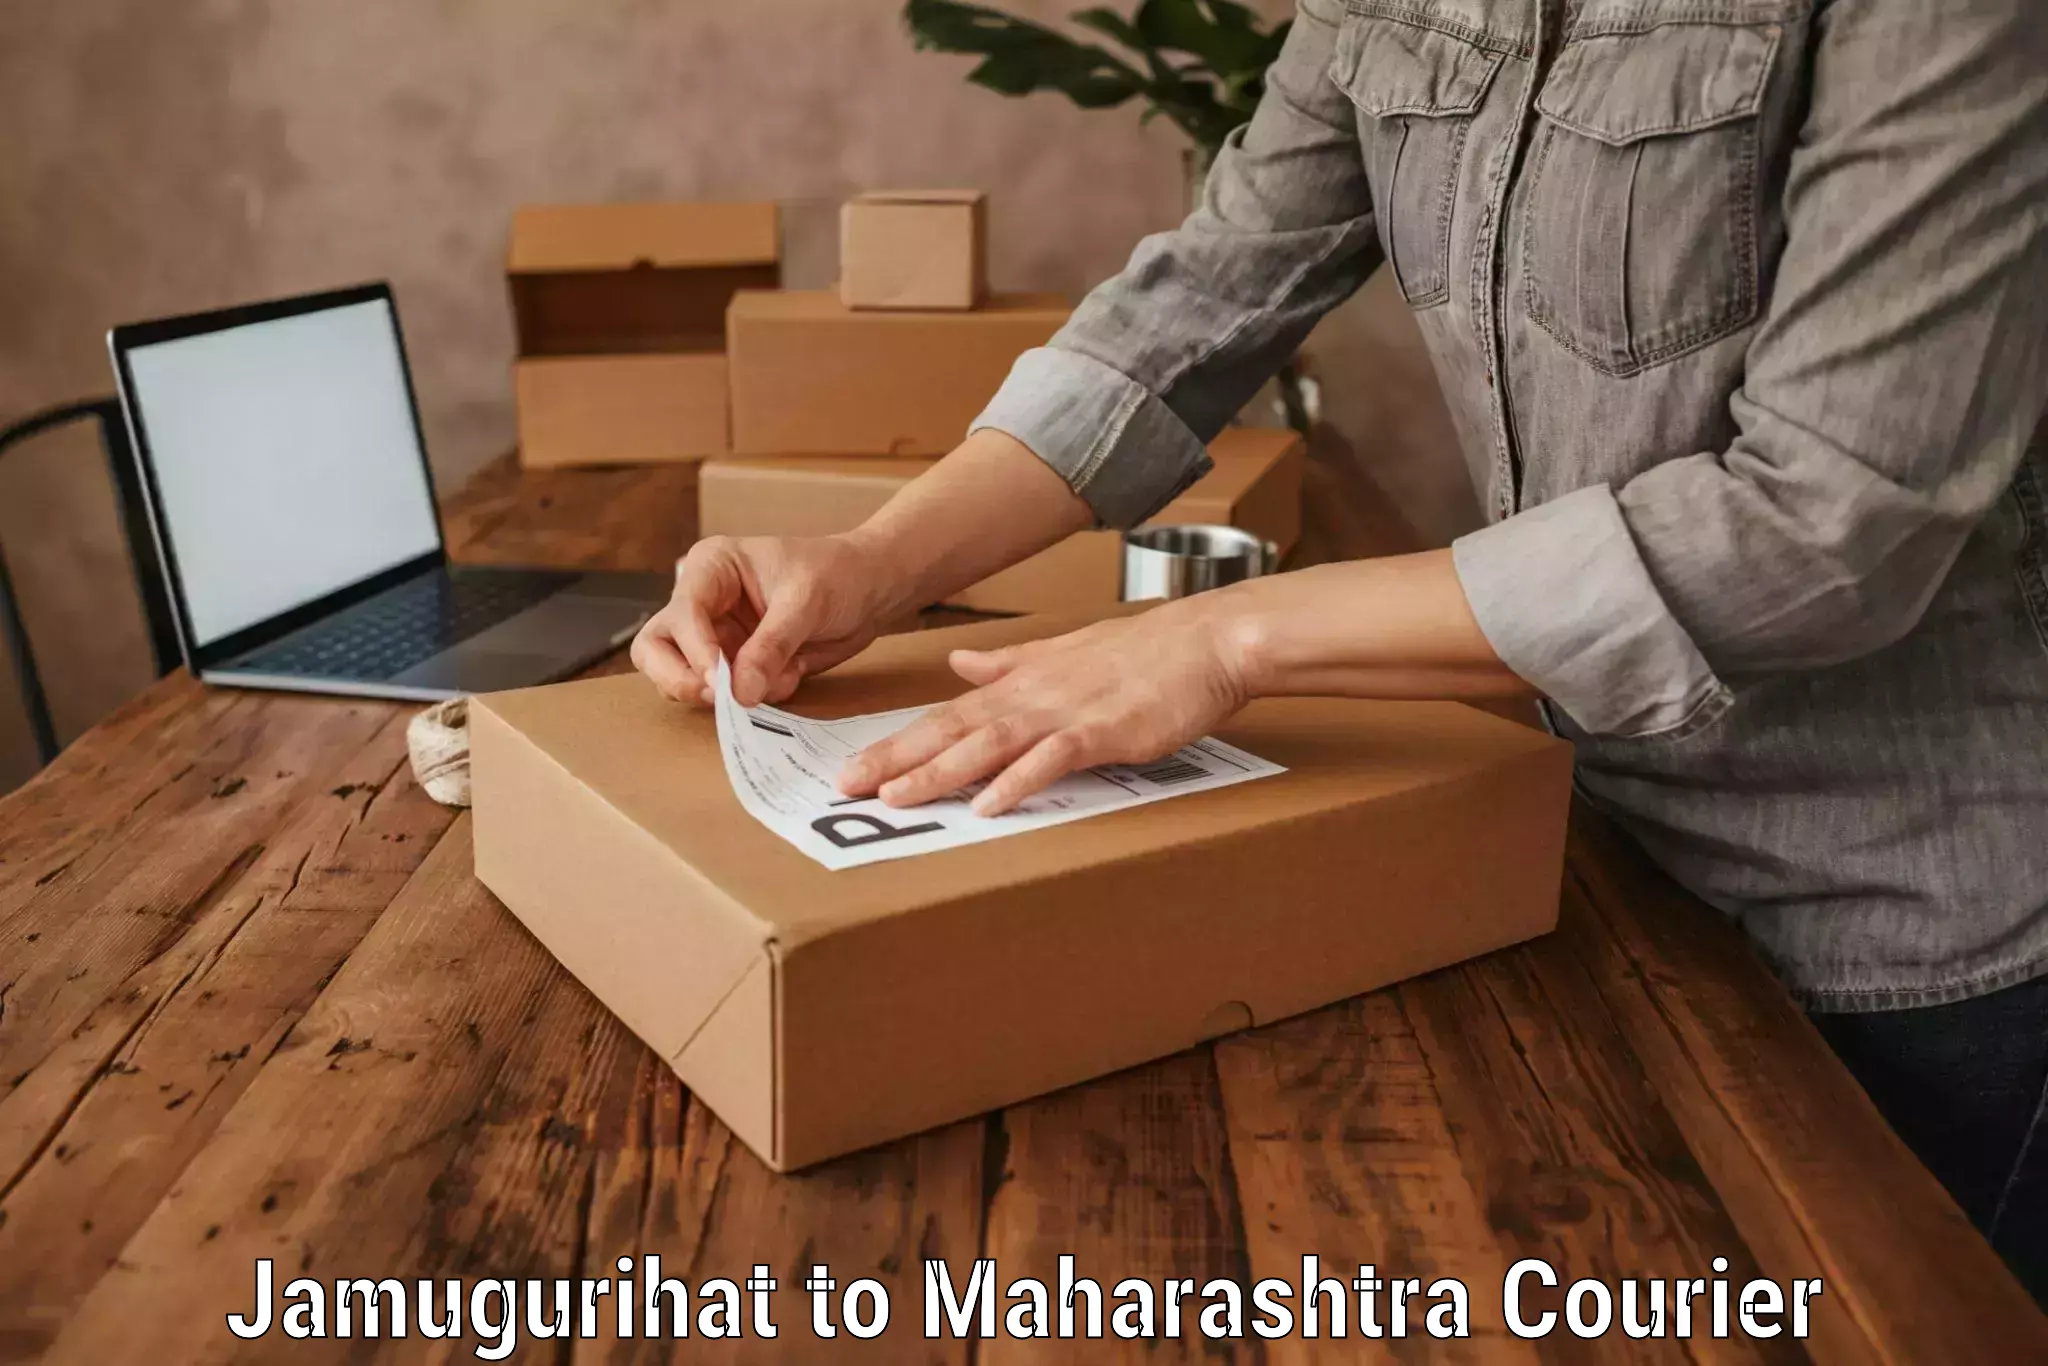 Luggage transport consulting Jamugurihat to Maharashtra